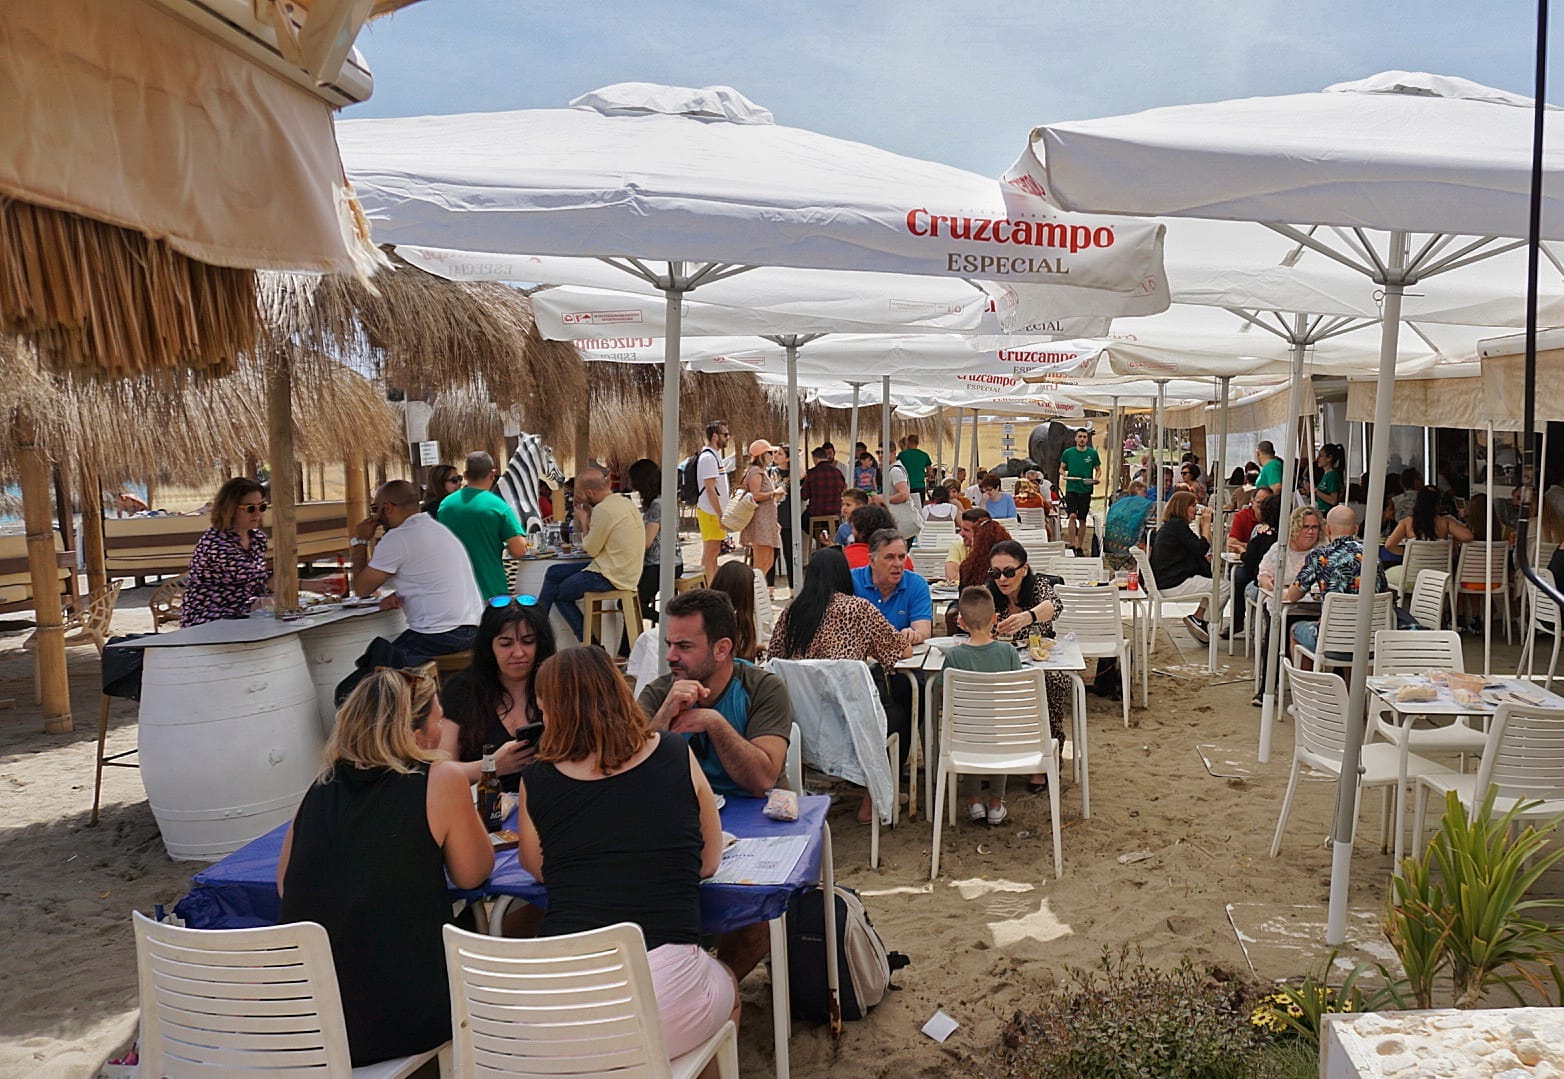 Fotos: 1 de mayo: Málaga se anticipa a la temporada alta con las mesas y las hamacas de las playas llenas